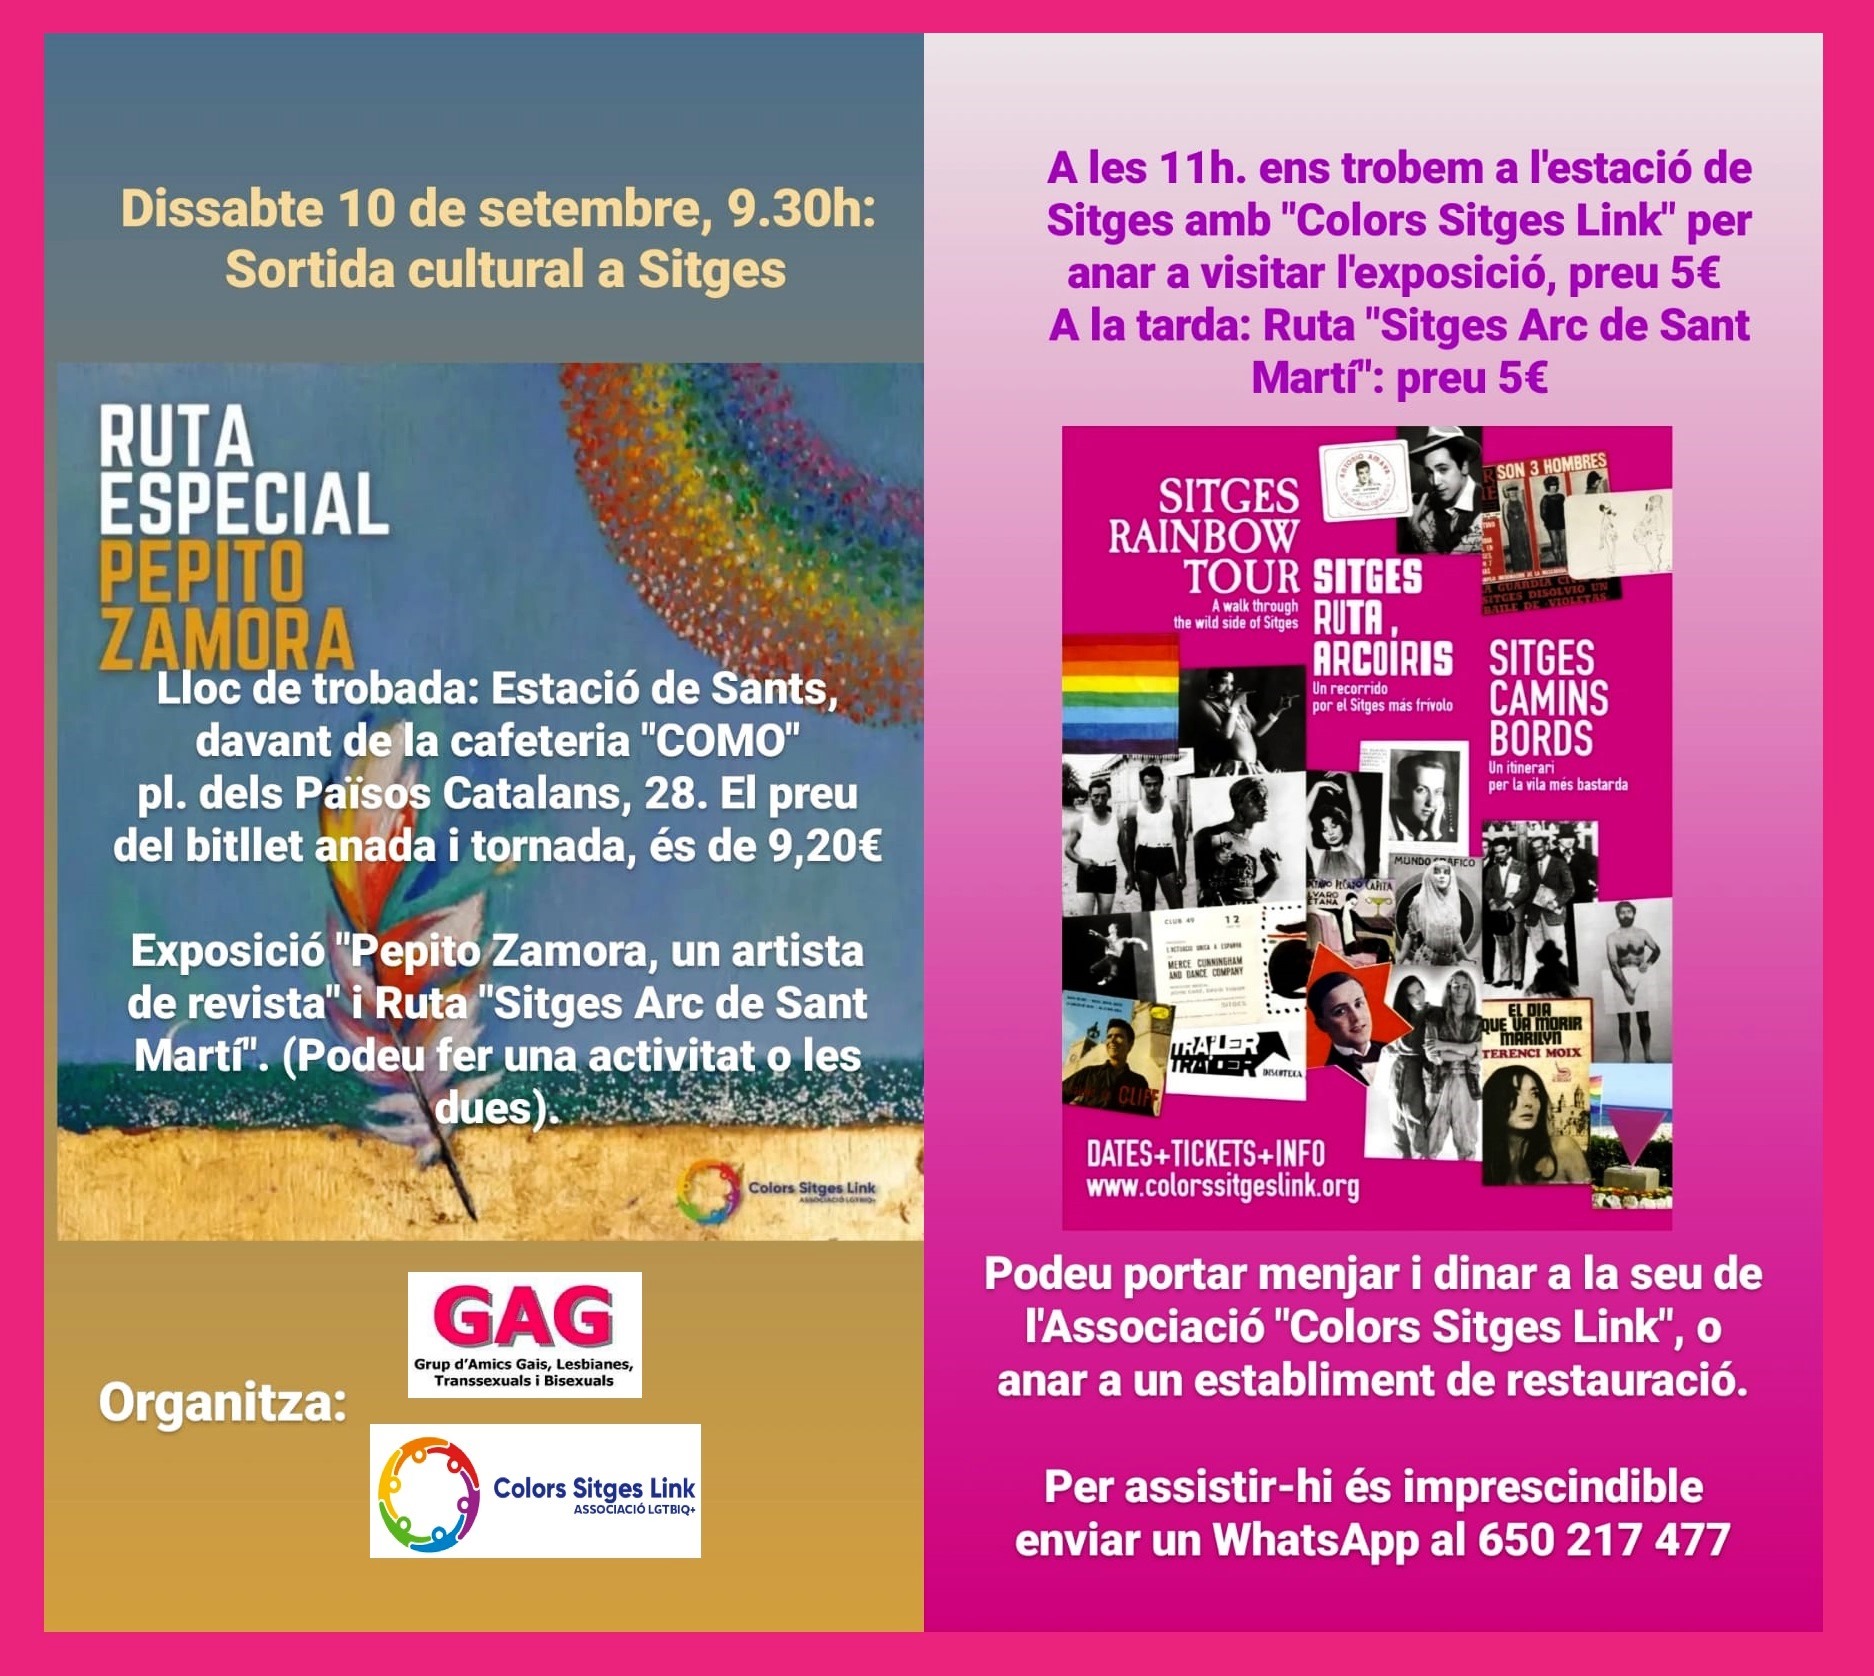 10 de septiembre a las 9:30 – Salida cultural a Sitges